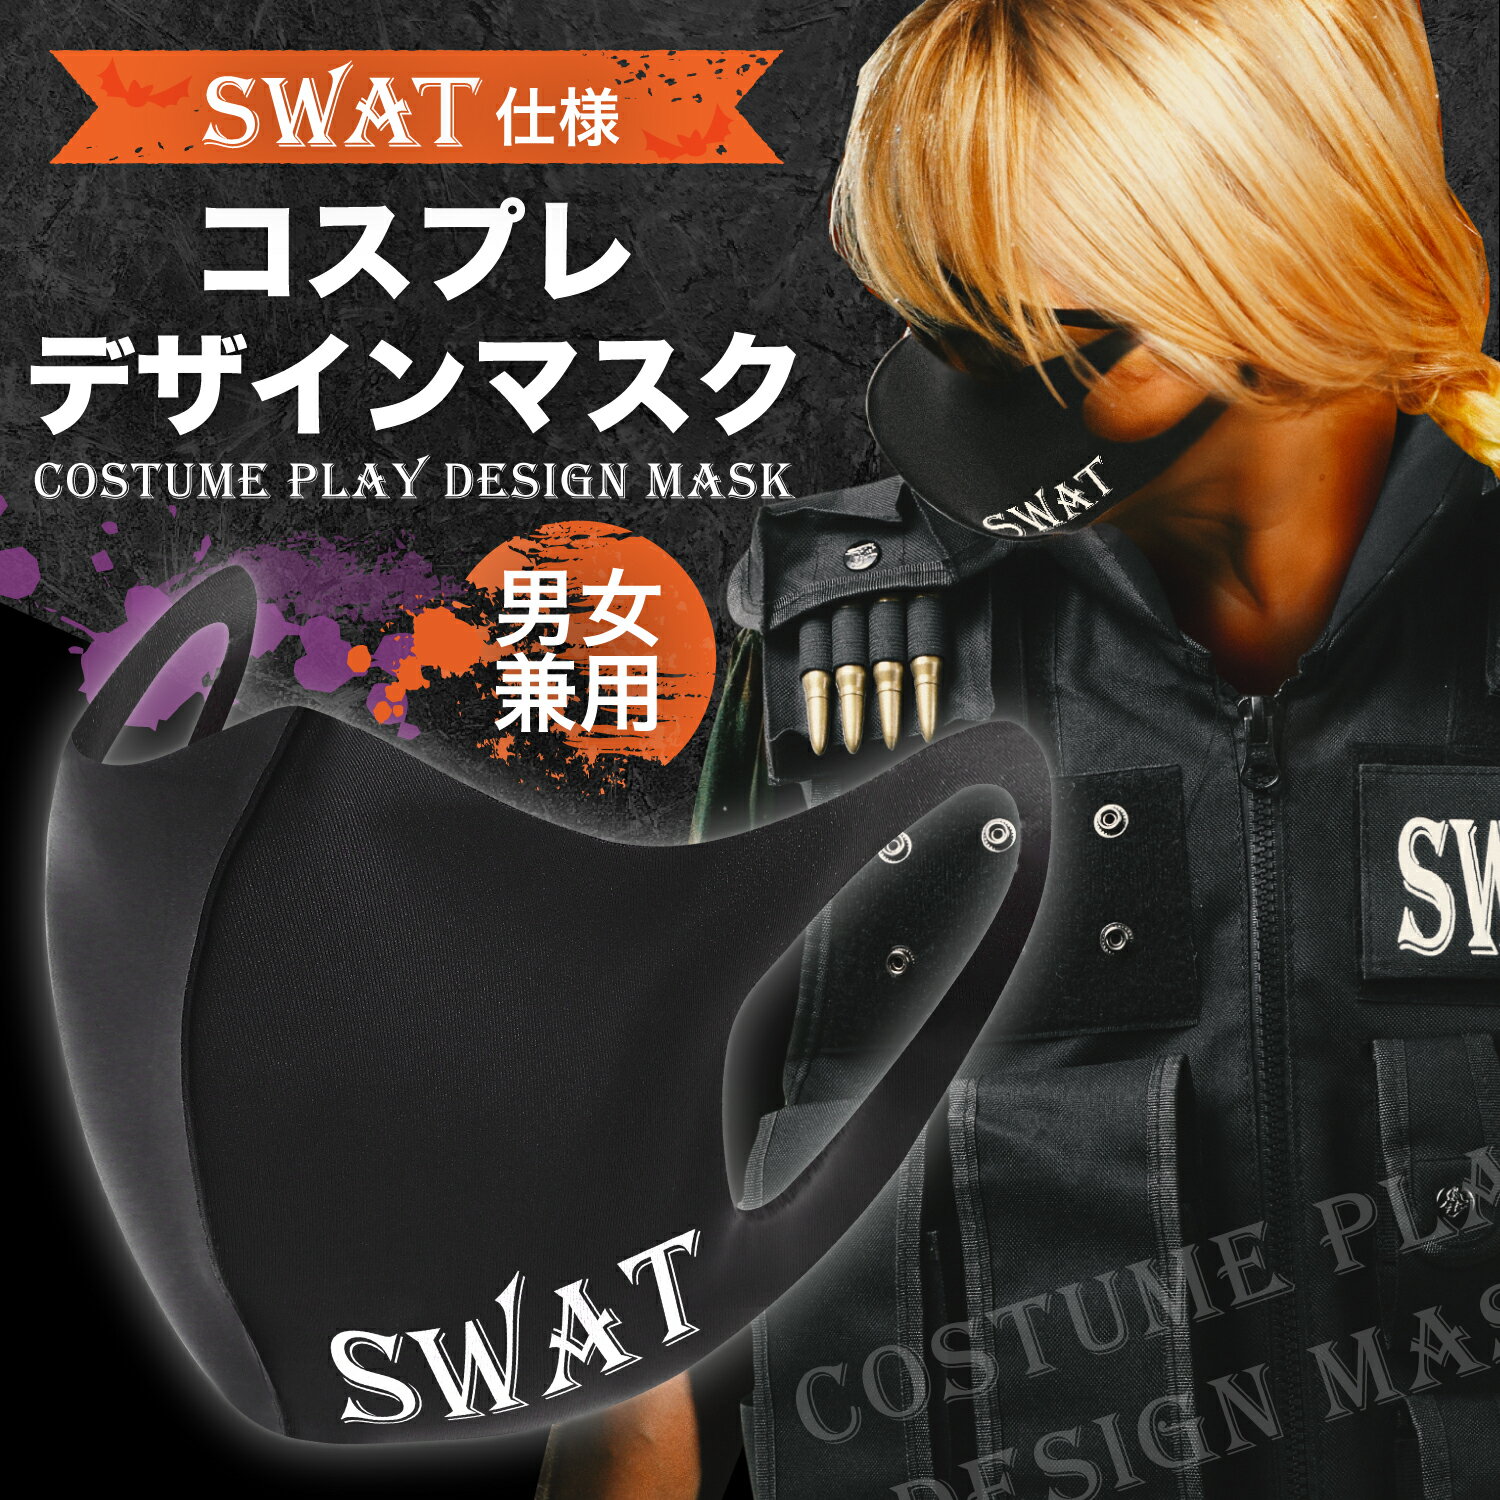 【5000円以上購入で1点1円】SWAT コスプ...の商品画像